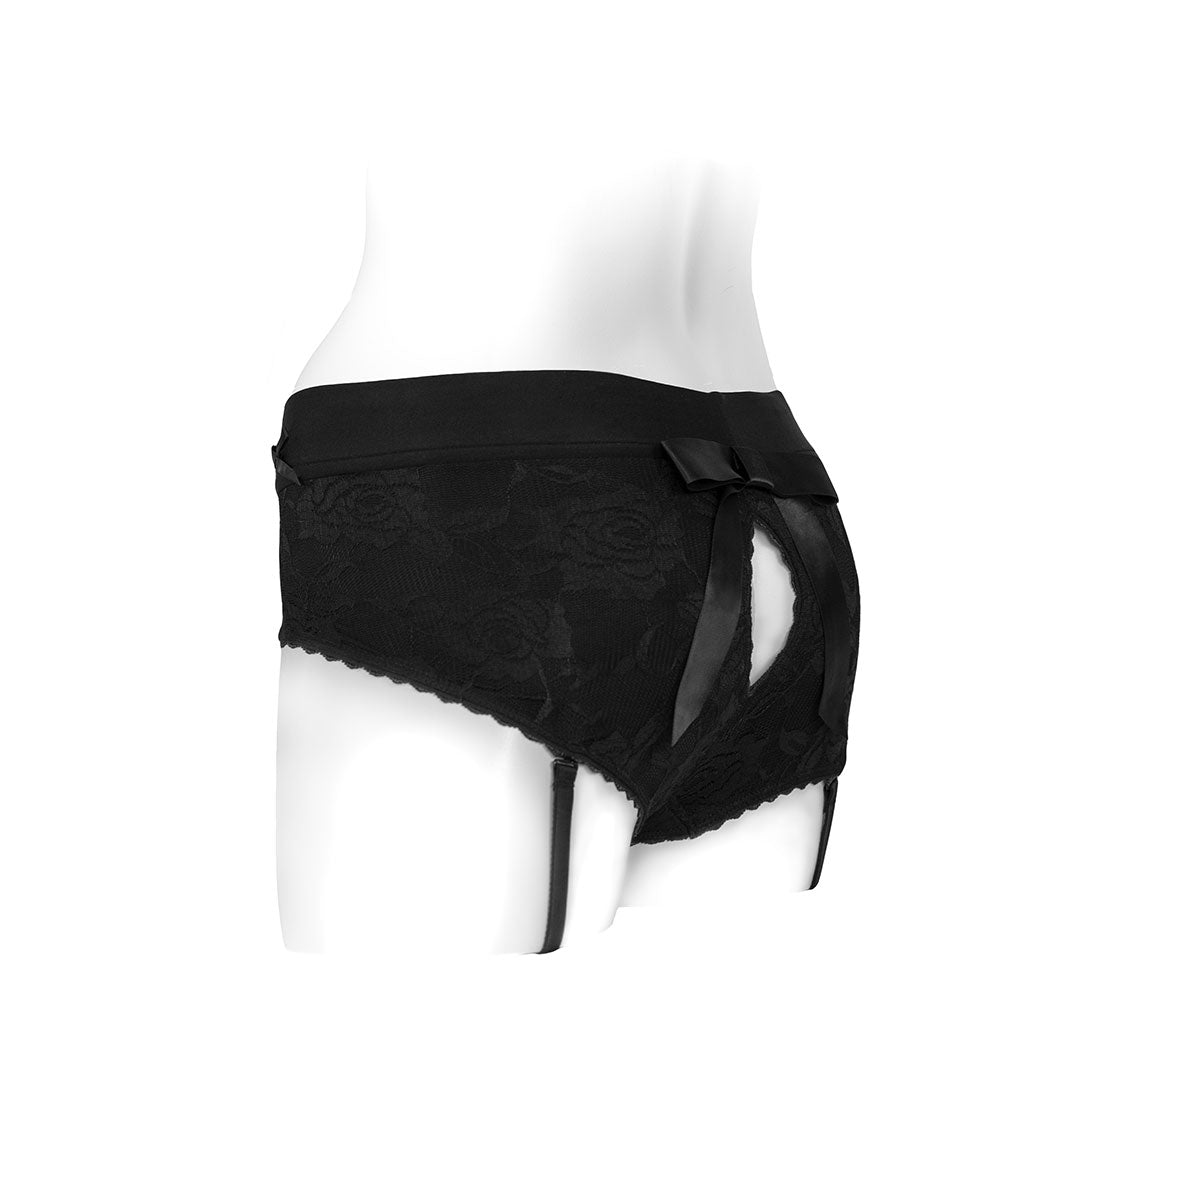 SpareParts Bella Harness Black-Black Nylon - Medium Intimates Adult Boutique